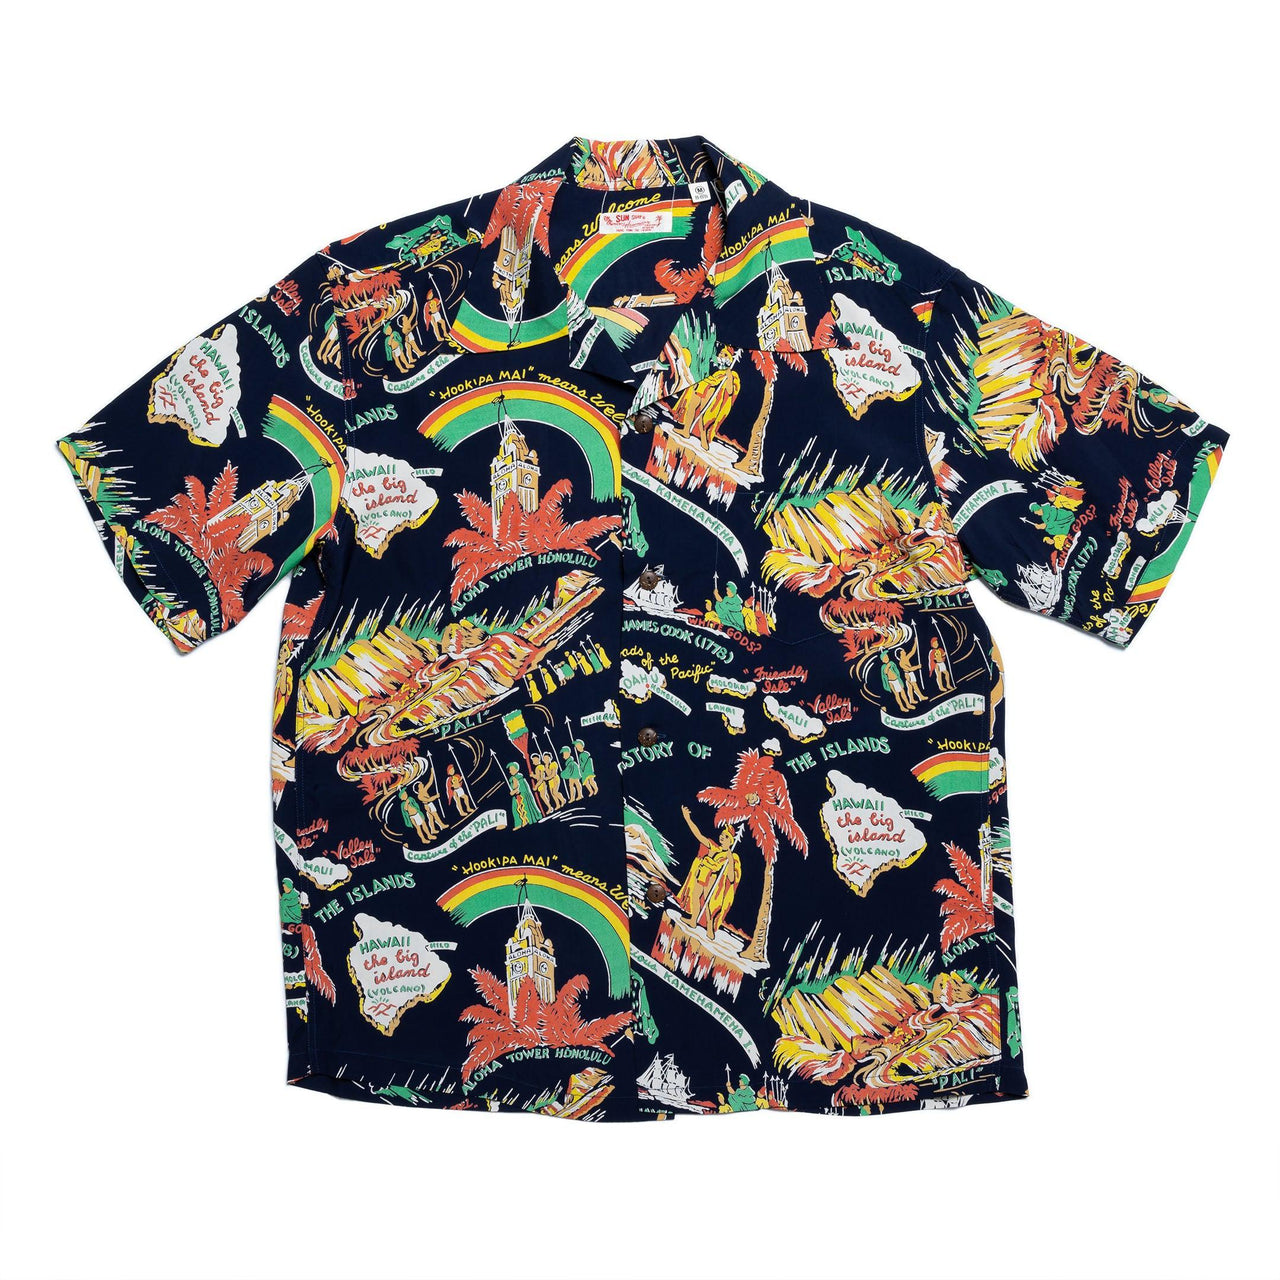 Sun Surf History Of The Islands Hawaiian Shirt Navy-Hawaiian Shirt-Clutch Cafe